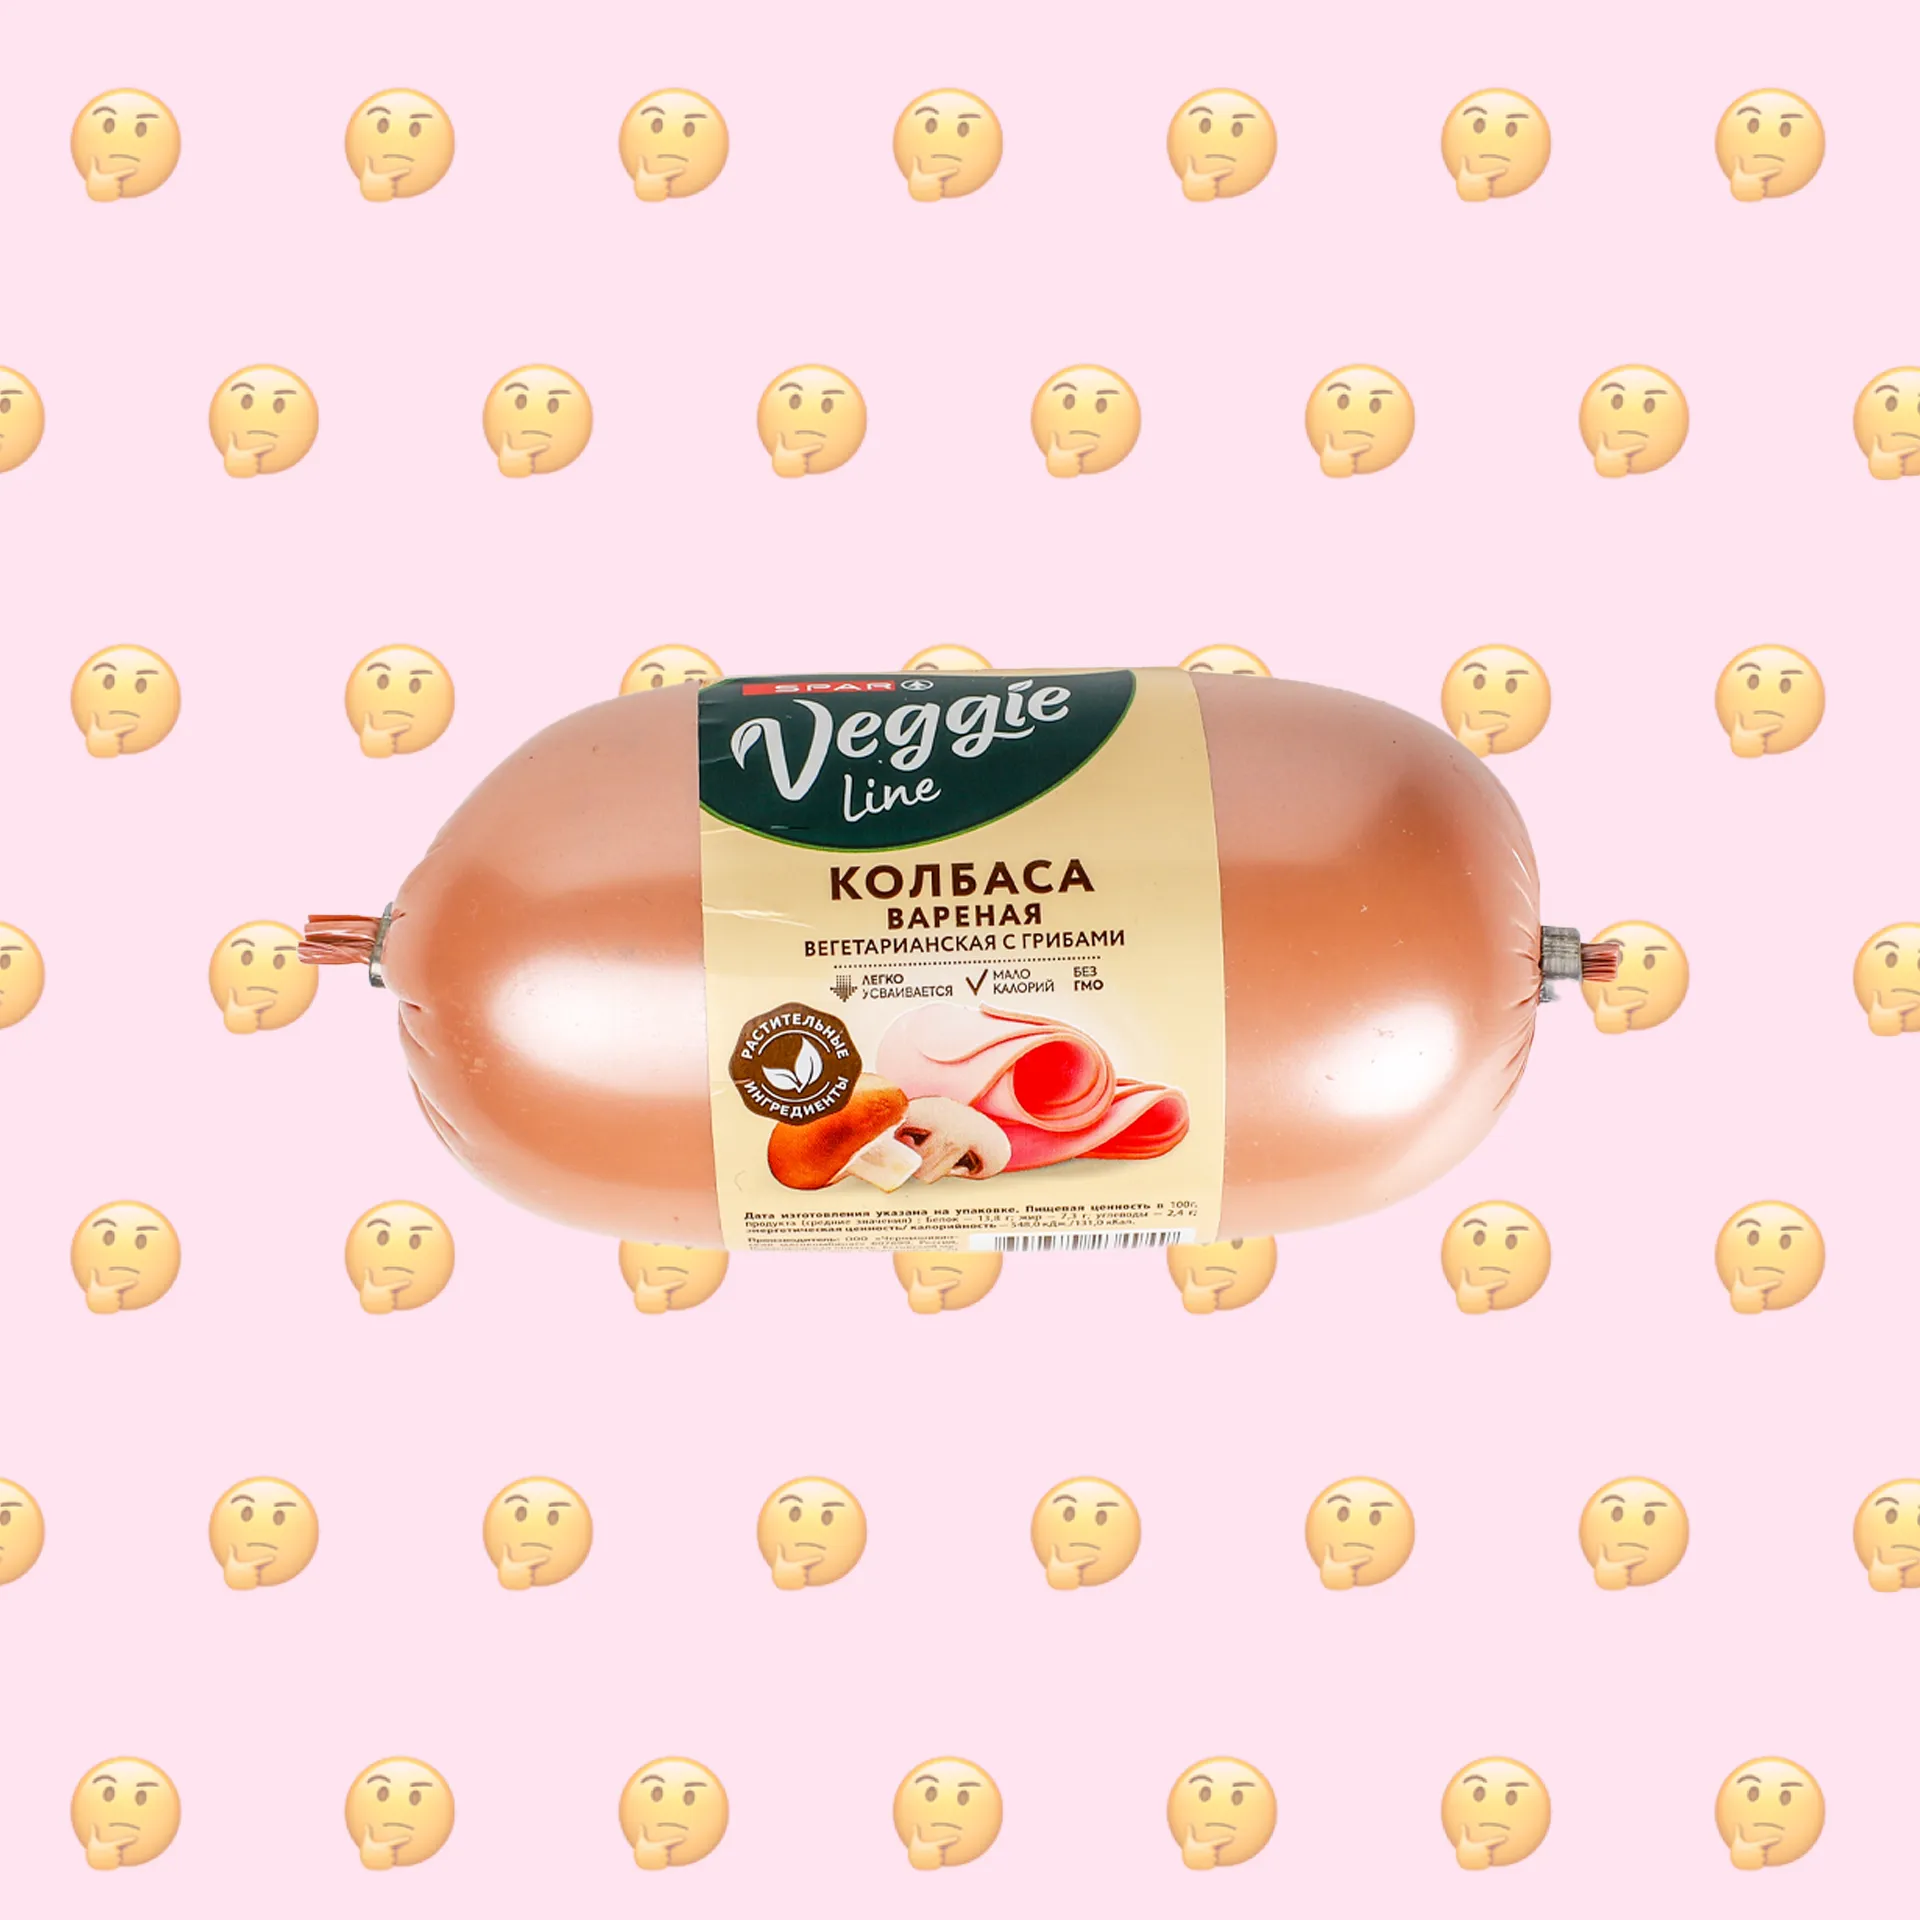 Веганская ли колбаса вареная вегетарианская с грибами Veggie Line Spar?